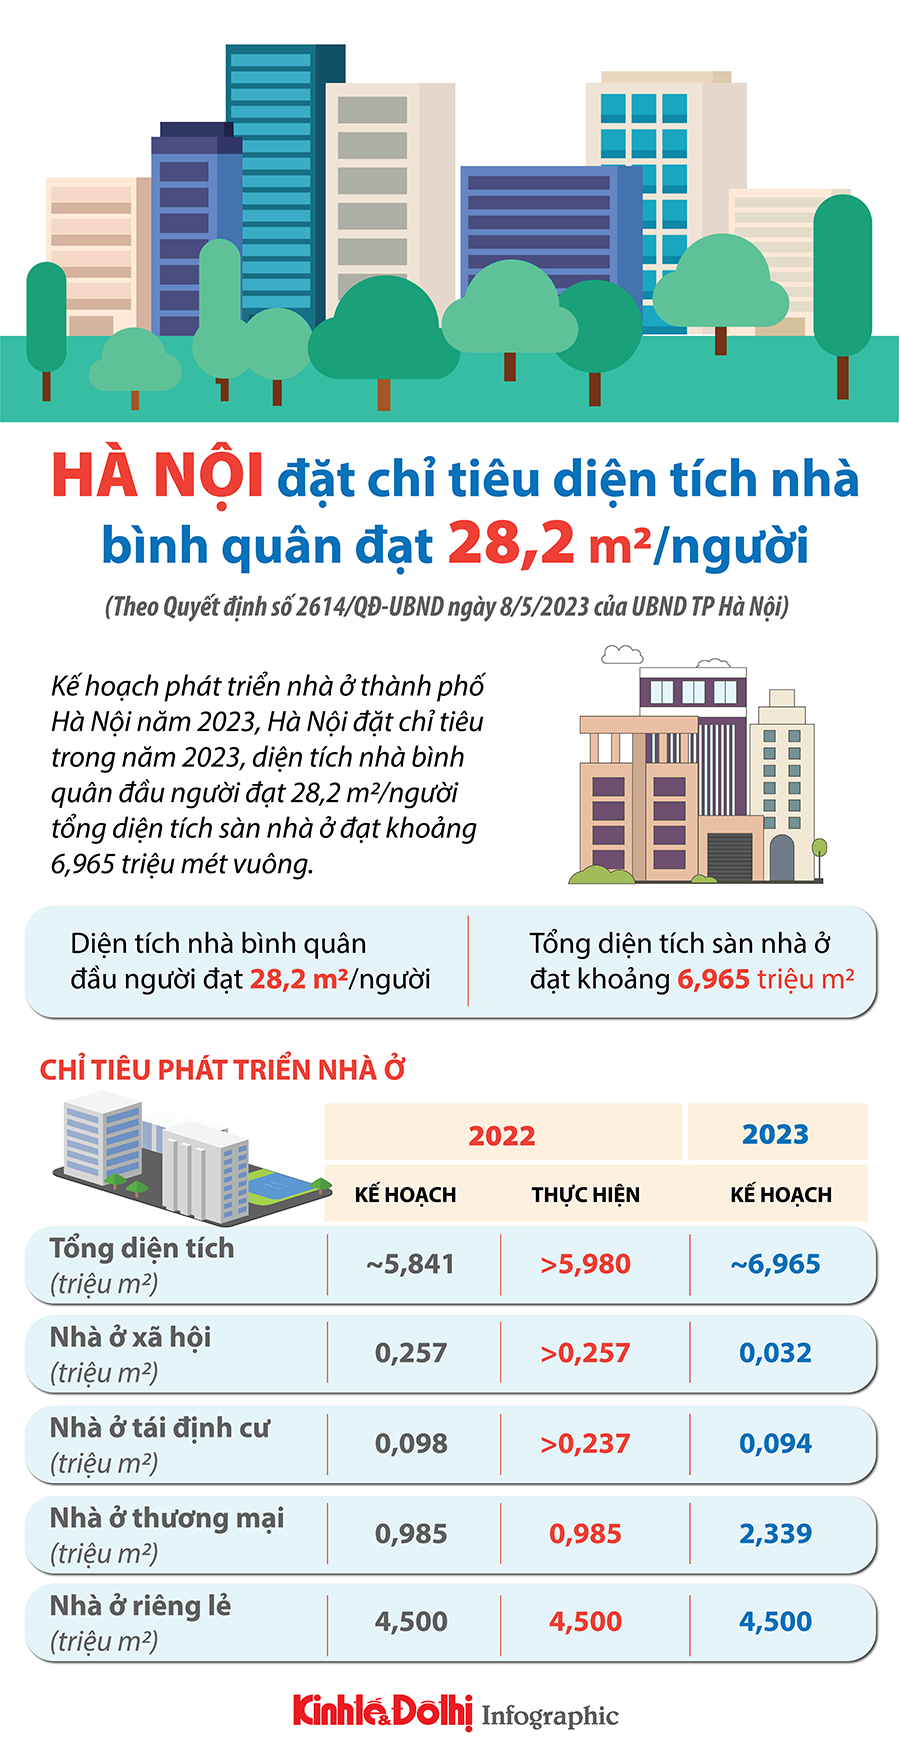 Hà Nội đặt chỉ tiêu diện tích nhà bình quân đạt 28,2 m2/người - Ảnh 1